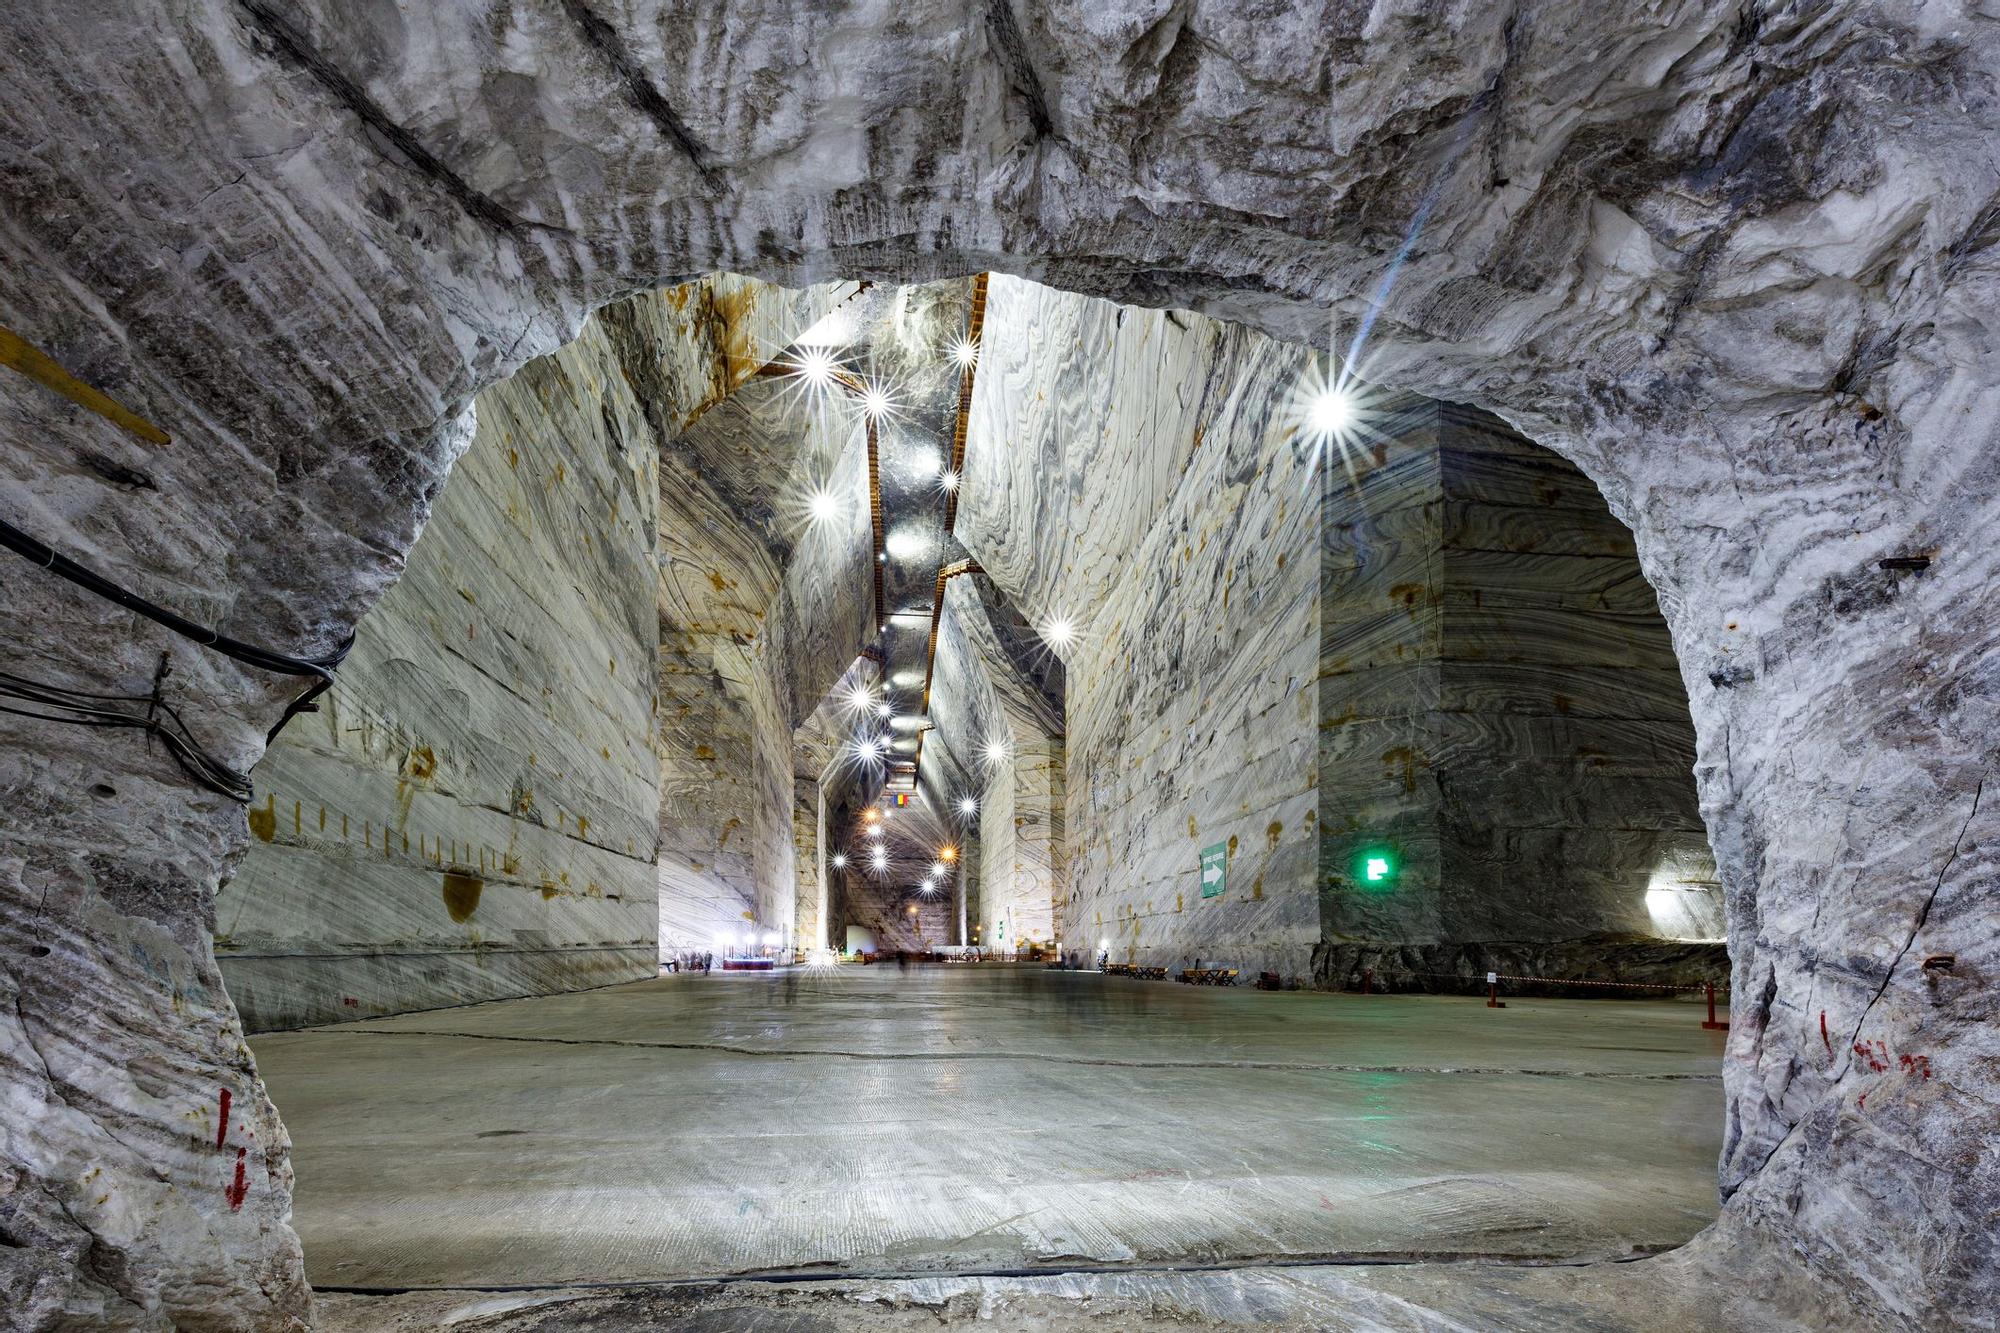 Es conocida como la mayor mina de sal de Europa y la más importante de Rumanía